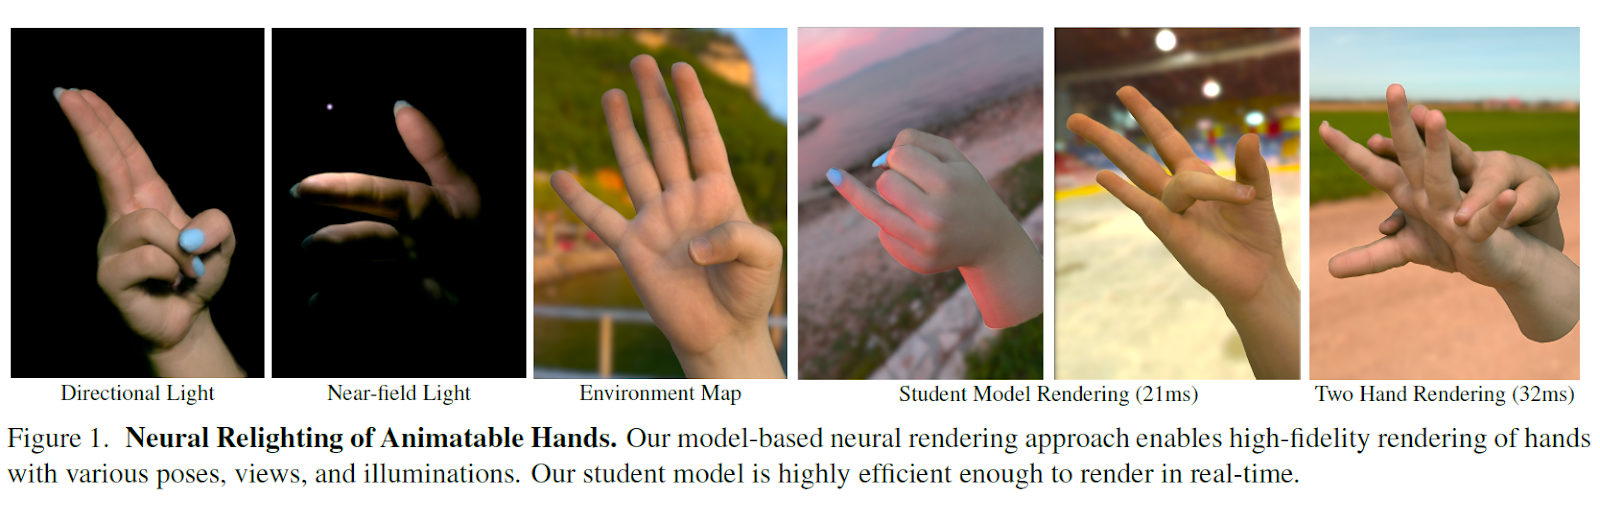 Nova studija umjetne inteligencije (AI) iz CMU-a i Mete predlaže okvir za učinkovito neuronsko osvjetljavanje modela zglobnih ruku 3